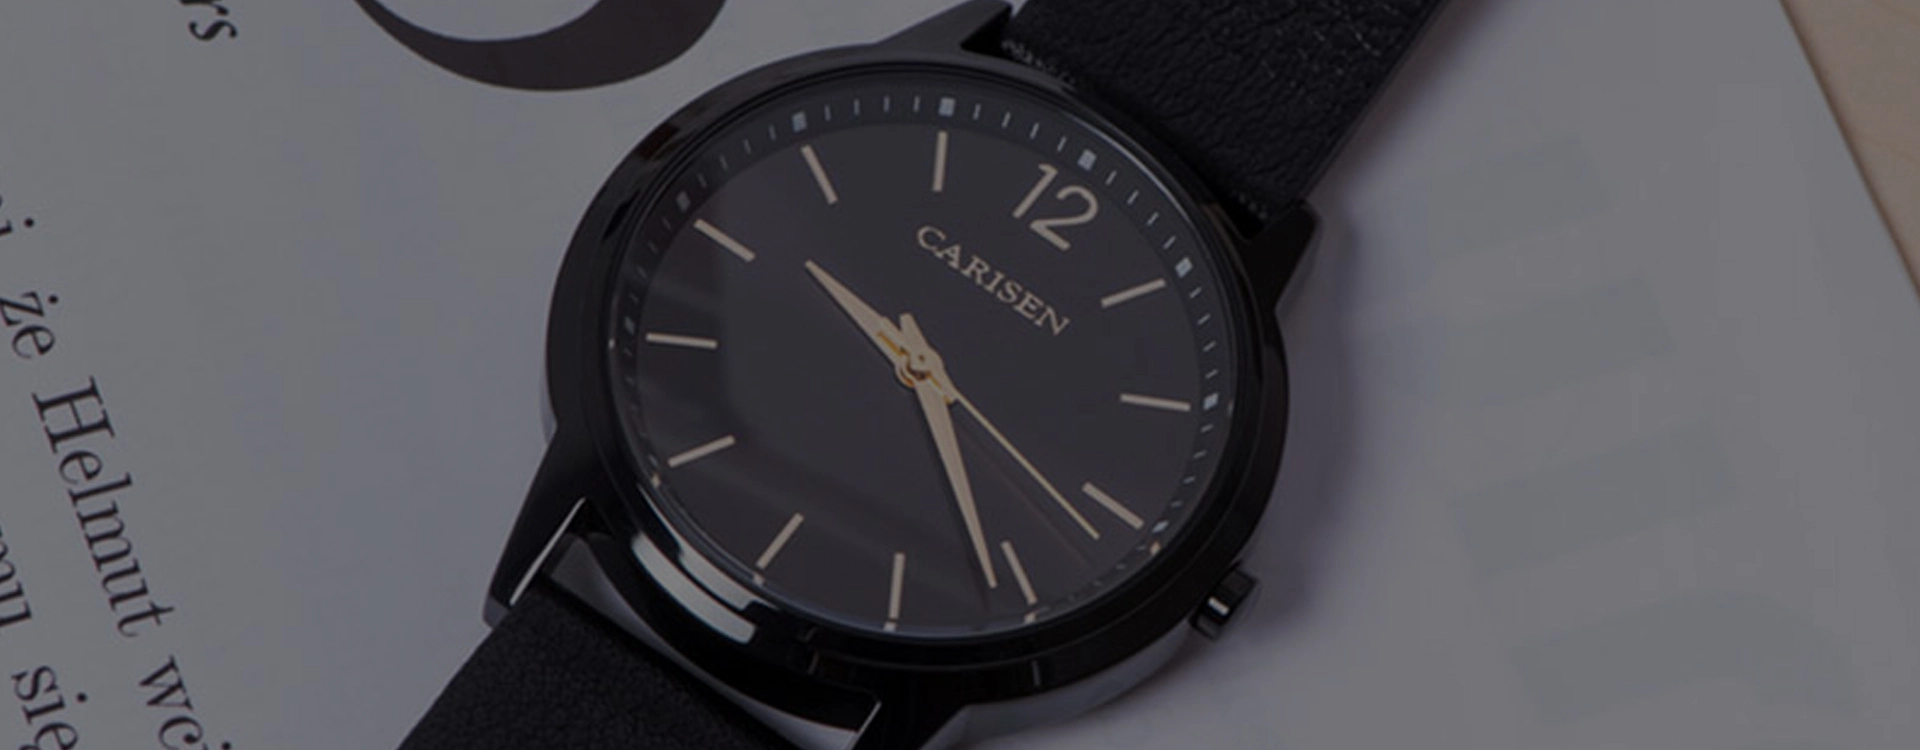 Luxury Watch VS. Casual Watch